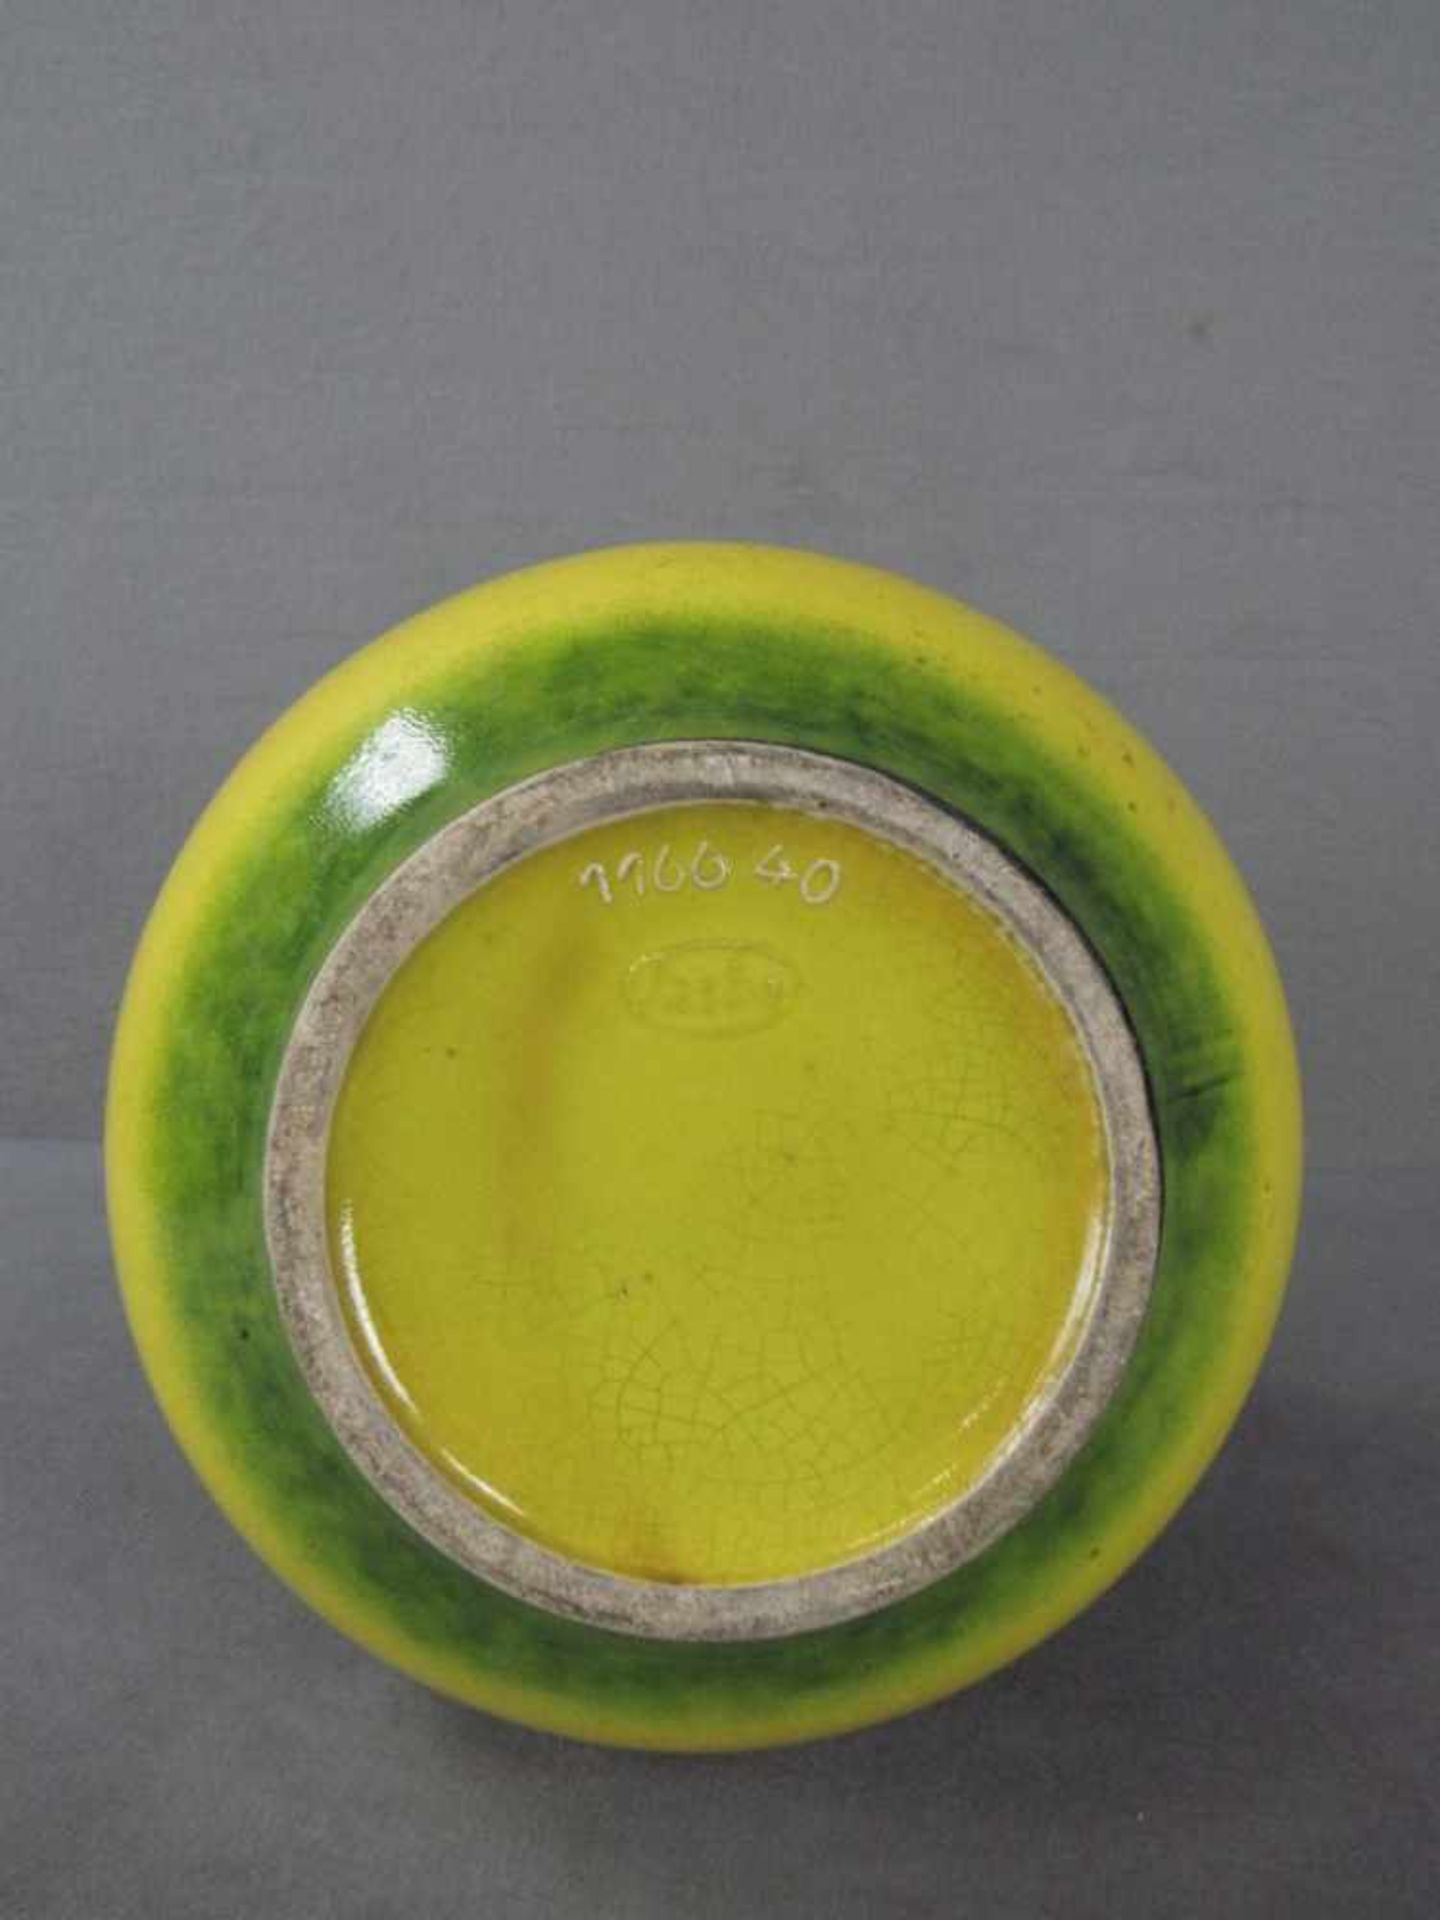 Designer Keramikvase gelb grün lasiert 40cm hoch gemarkt - Image 2 of 4